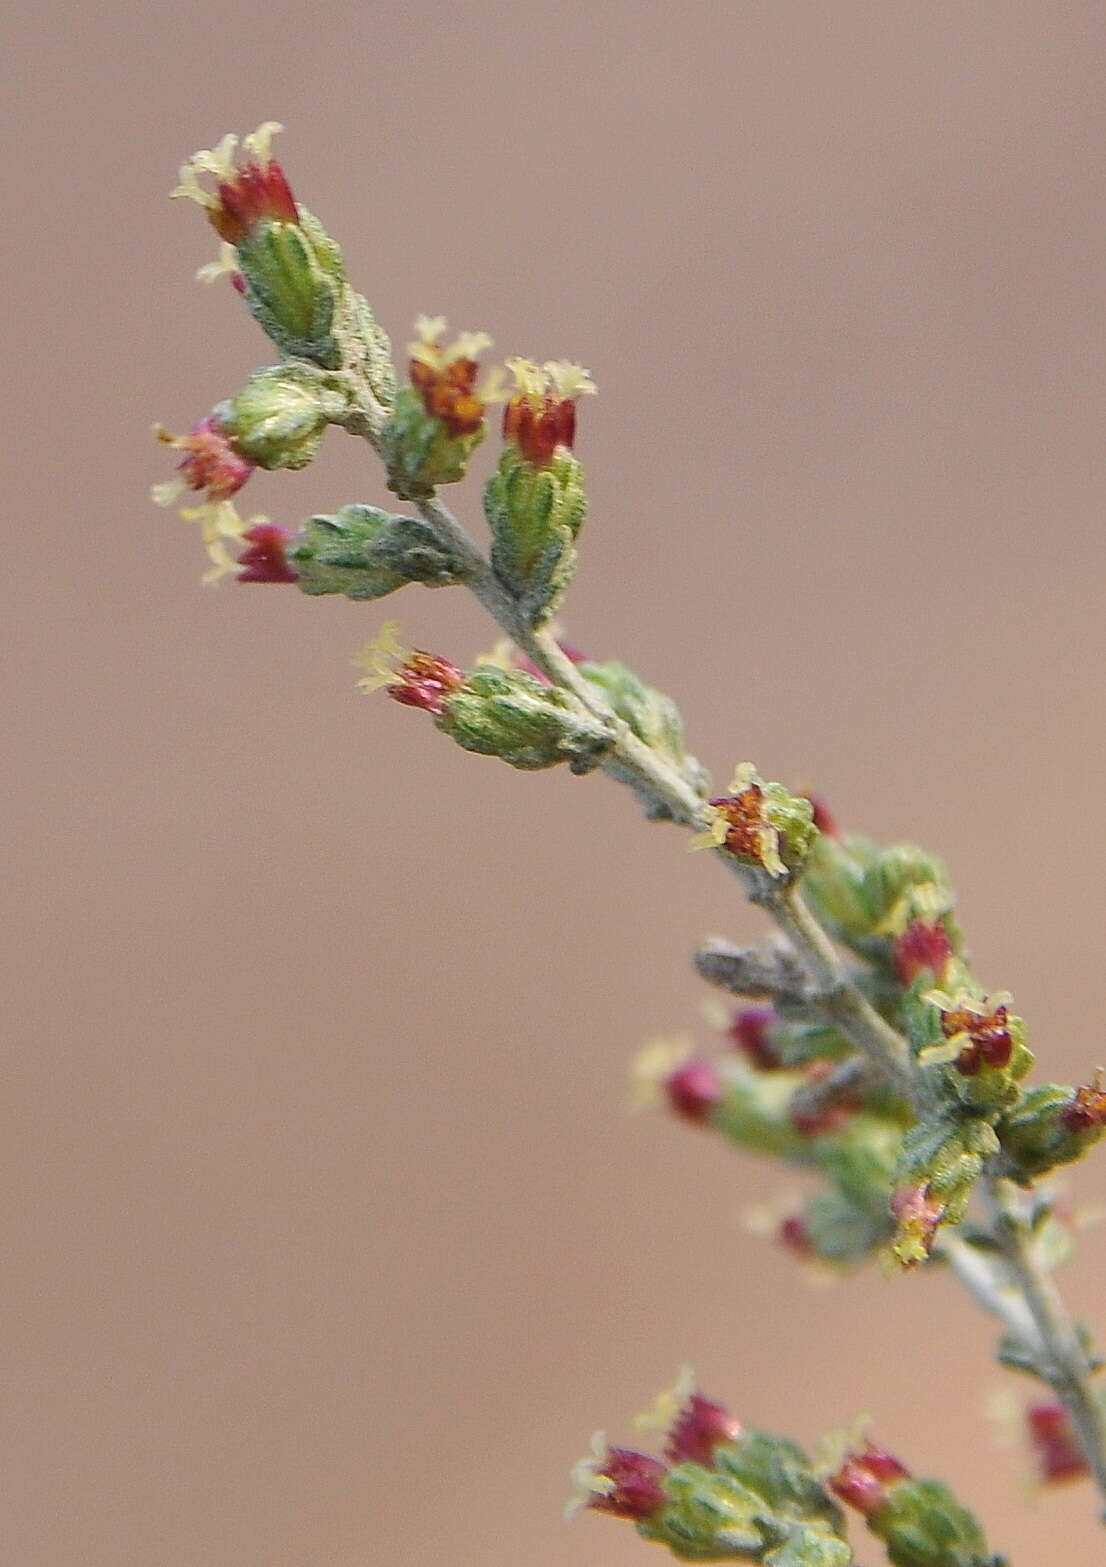 Sivun Seriphidium herba-alba (Asso) J. Soják kuva